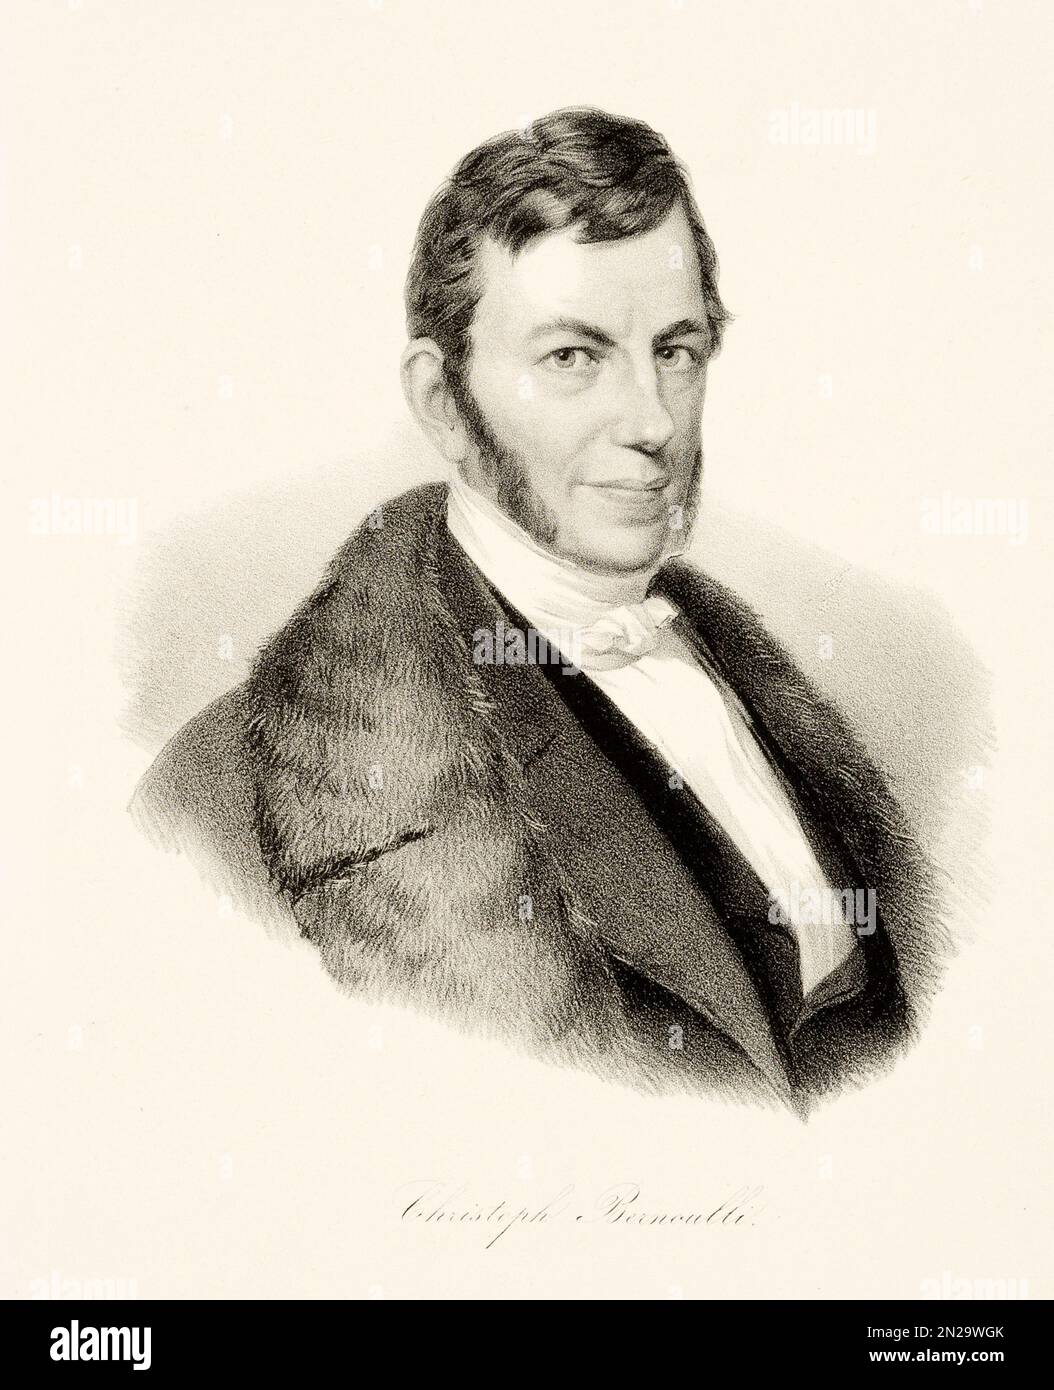 1820 CA , Bâle , SUISSE : Portrait de l'économiste suisse , naturaliste , physicien , avocat et philosophe CHRISTOPH BERNOULLI ( 1782 - 1863 ) . Gravure de Biedermeier , XIX siècle . - HISTOIRE - FOTO STORICHE - SCIENZIATO - SCIENTIFIQUE - PORTRAIT - RITRATTO - SVIZZERA - DIRITTO - LEGALE - AVVOCATO - DOTTORE - MEDICO - MEDICINA - MÉDECINE - SCIENZA - SCIENCE - PHILOSOPHIE - FILOSOFO - FILOSOFA - FILOSOFIA - SCIENZE URALI - FILURALI - NATURA - NATALB- ARCHIVIO- NATURA - NATOSOFO - NATALB- Banque D'Images